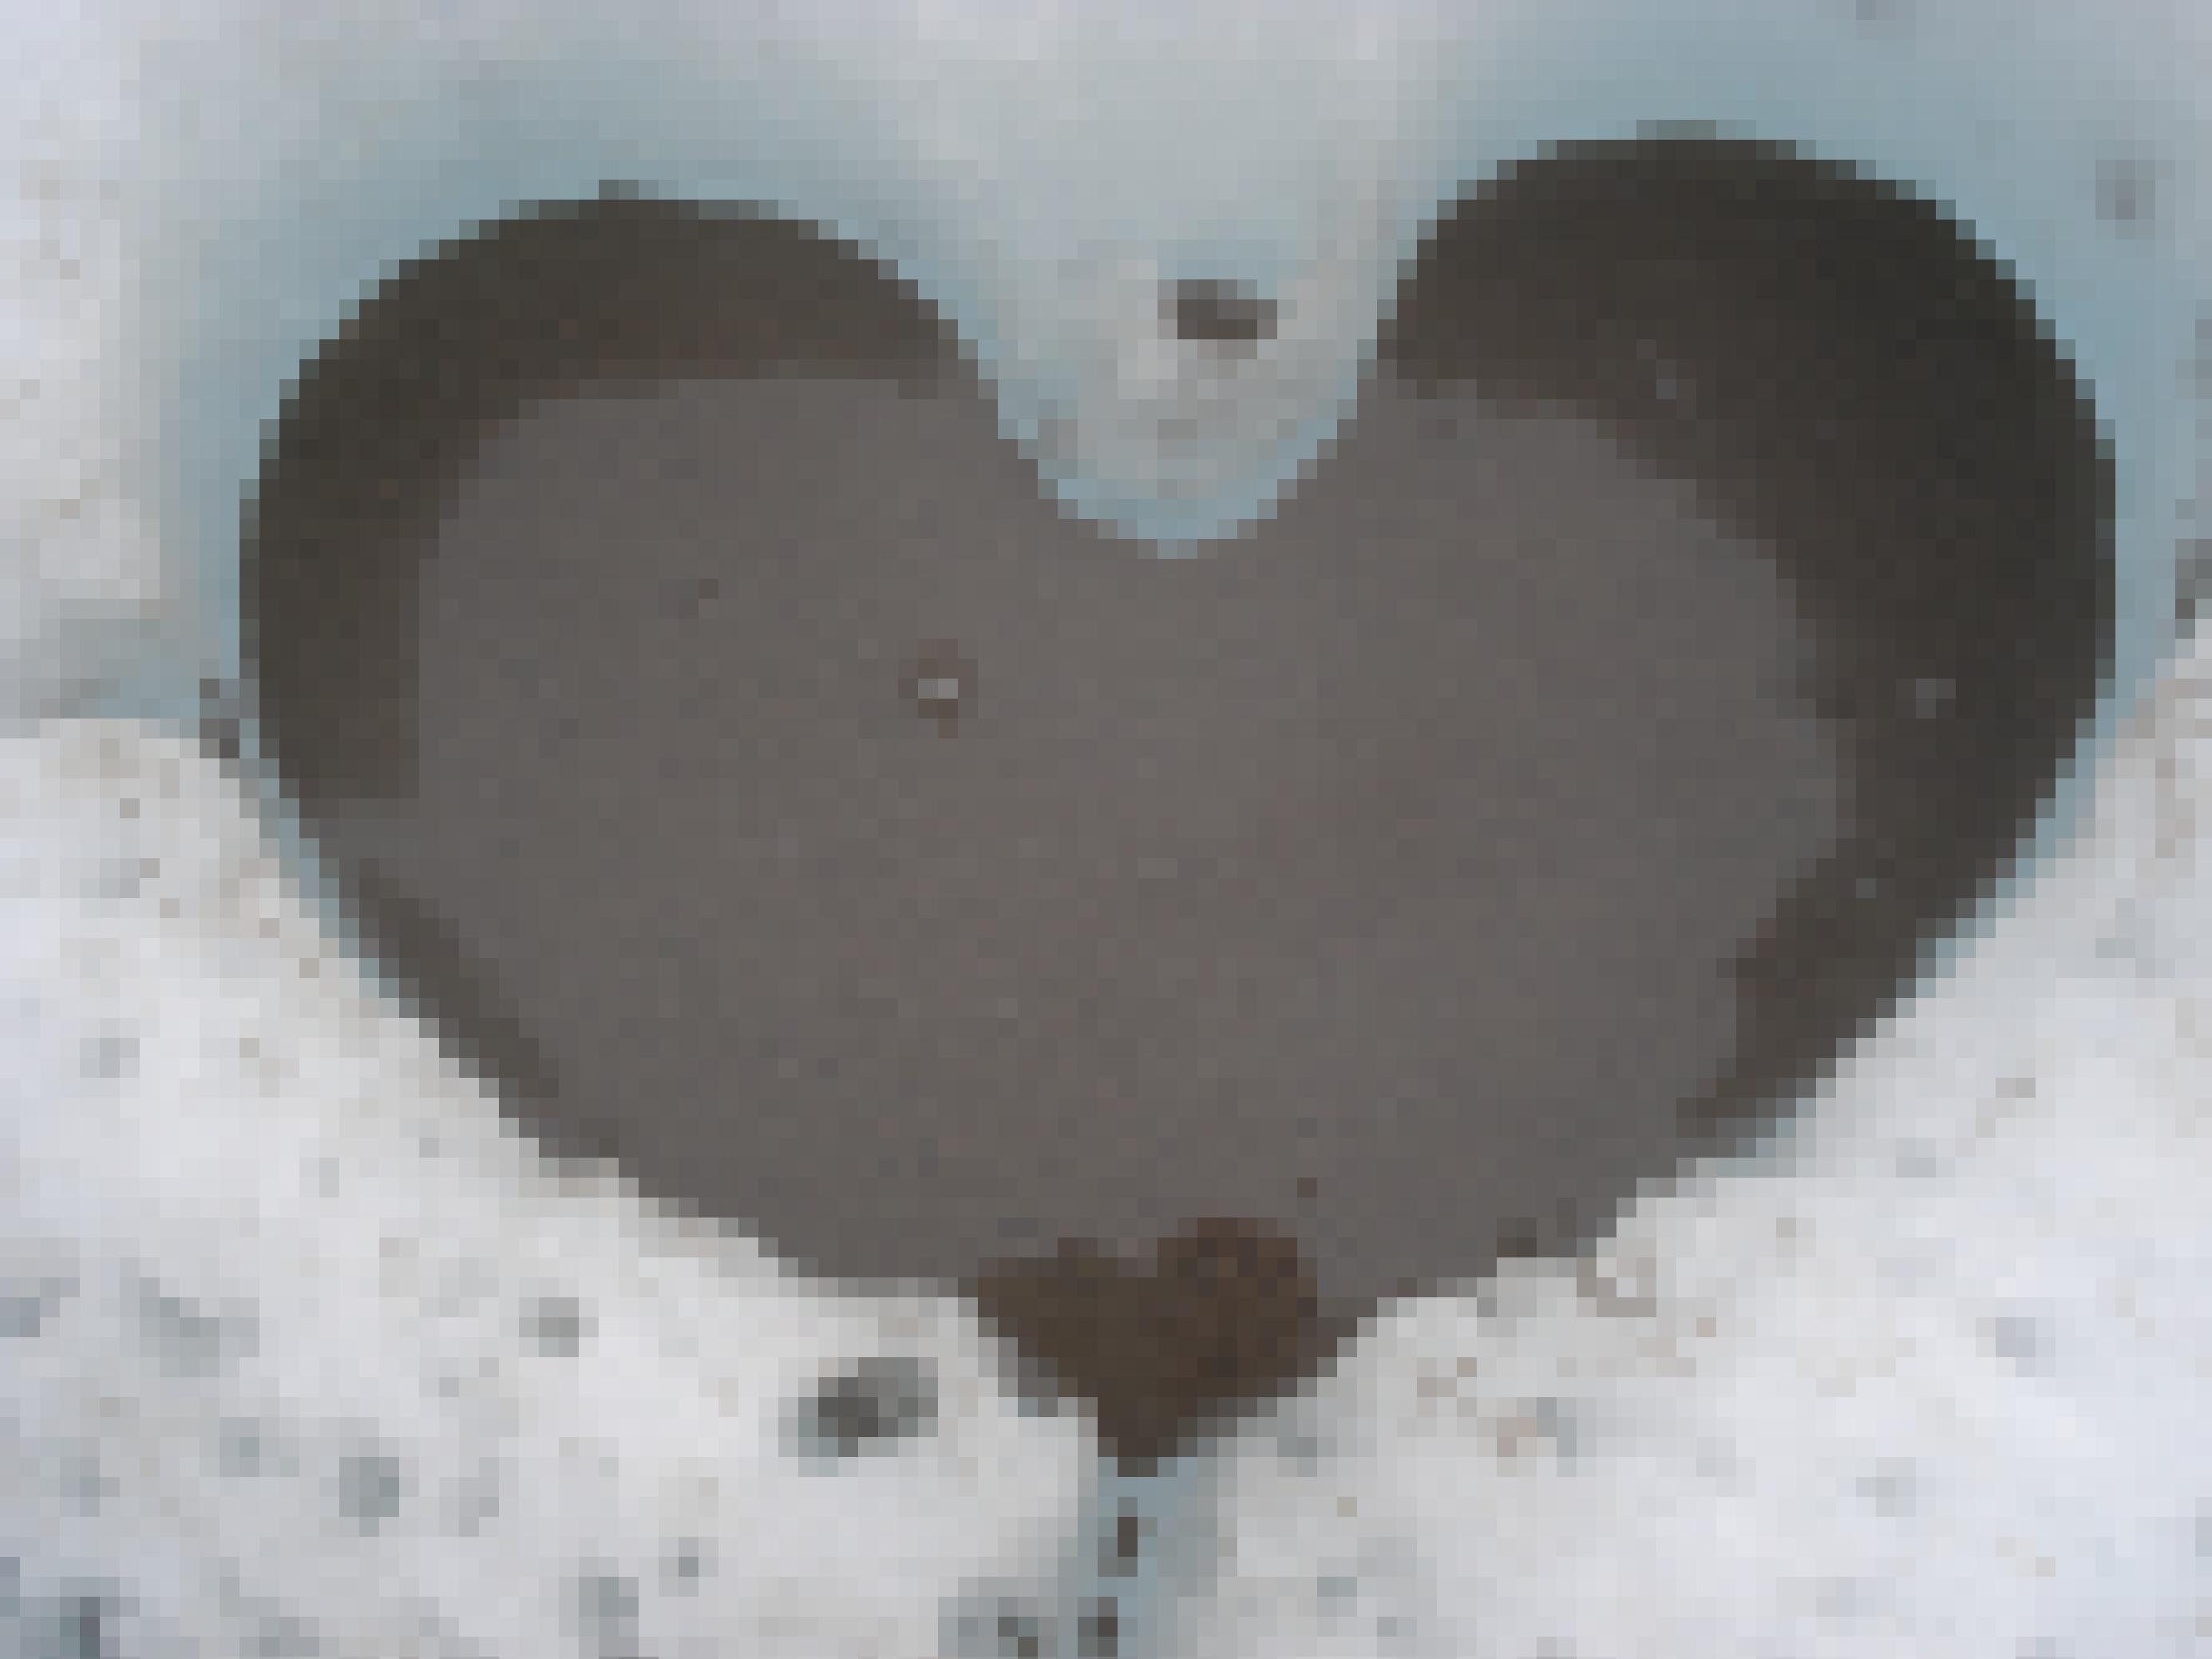 Herzförmige Schmelzvertiefung auf der Gletscheroberfläche, gefüllt mit Wasser und dunklen Krümeln, Kryokonit genannt.